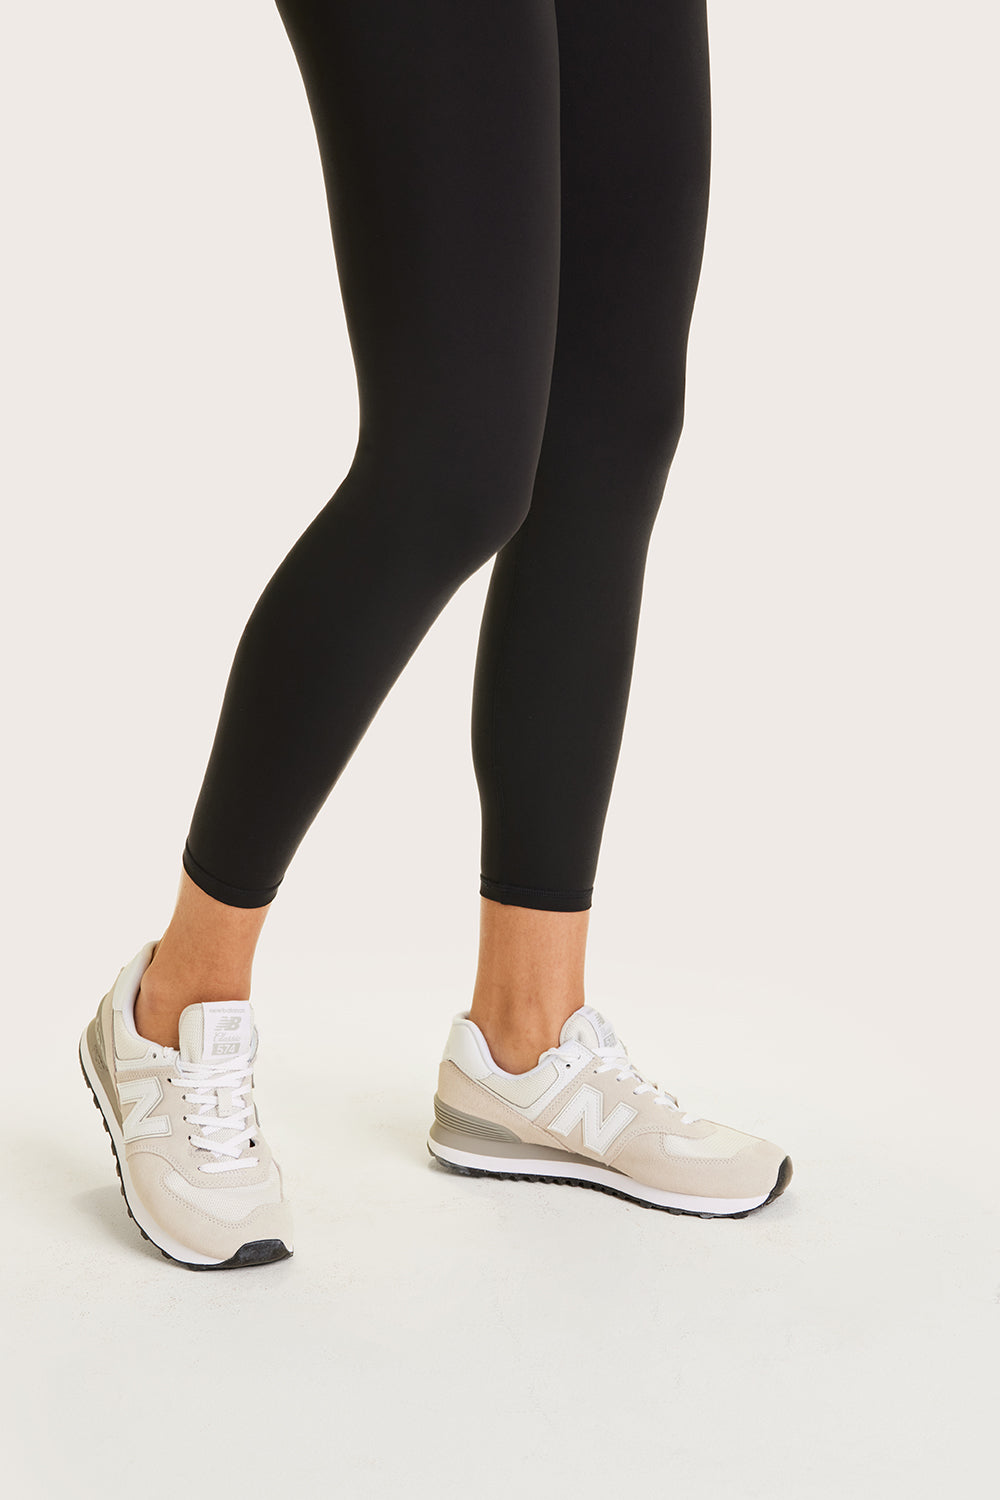 Buy Nike Women's Yoga Luxe 7/8 Leggings Black in KSA -SSS